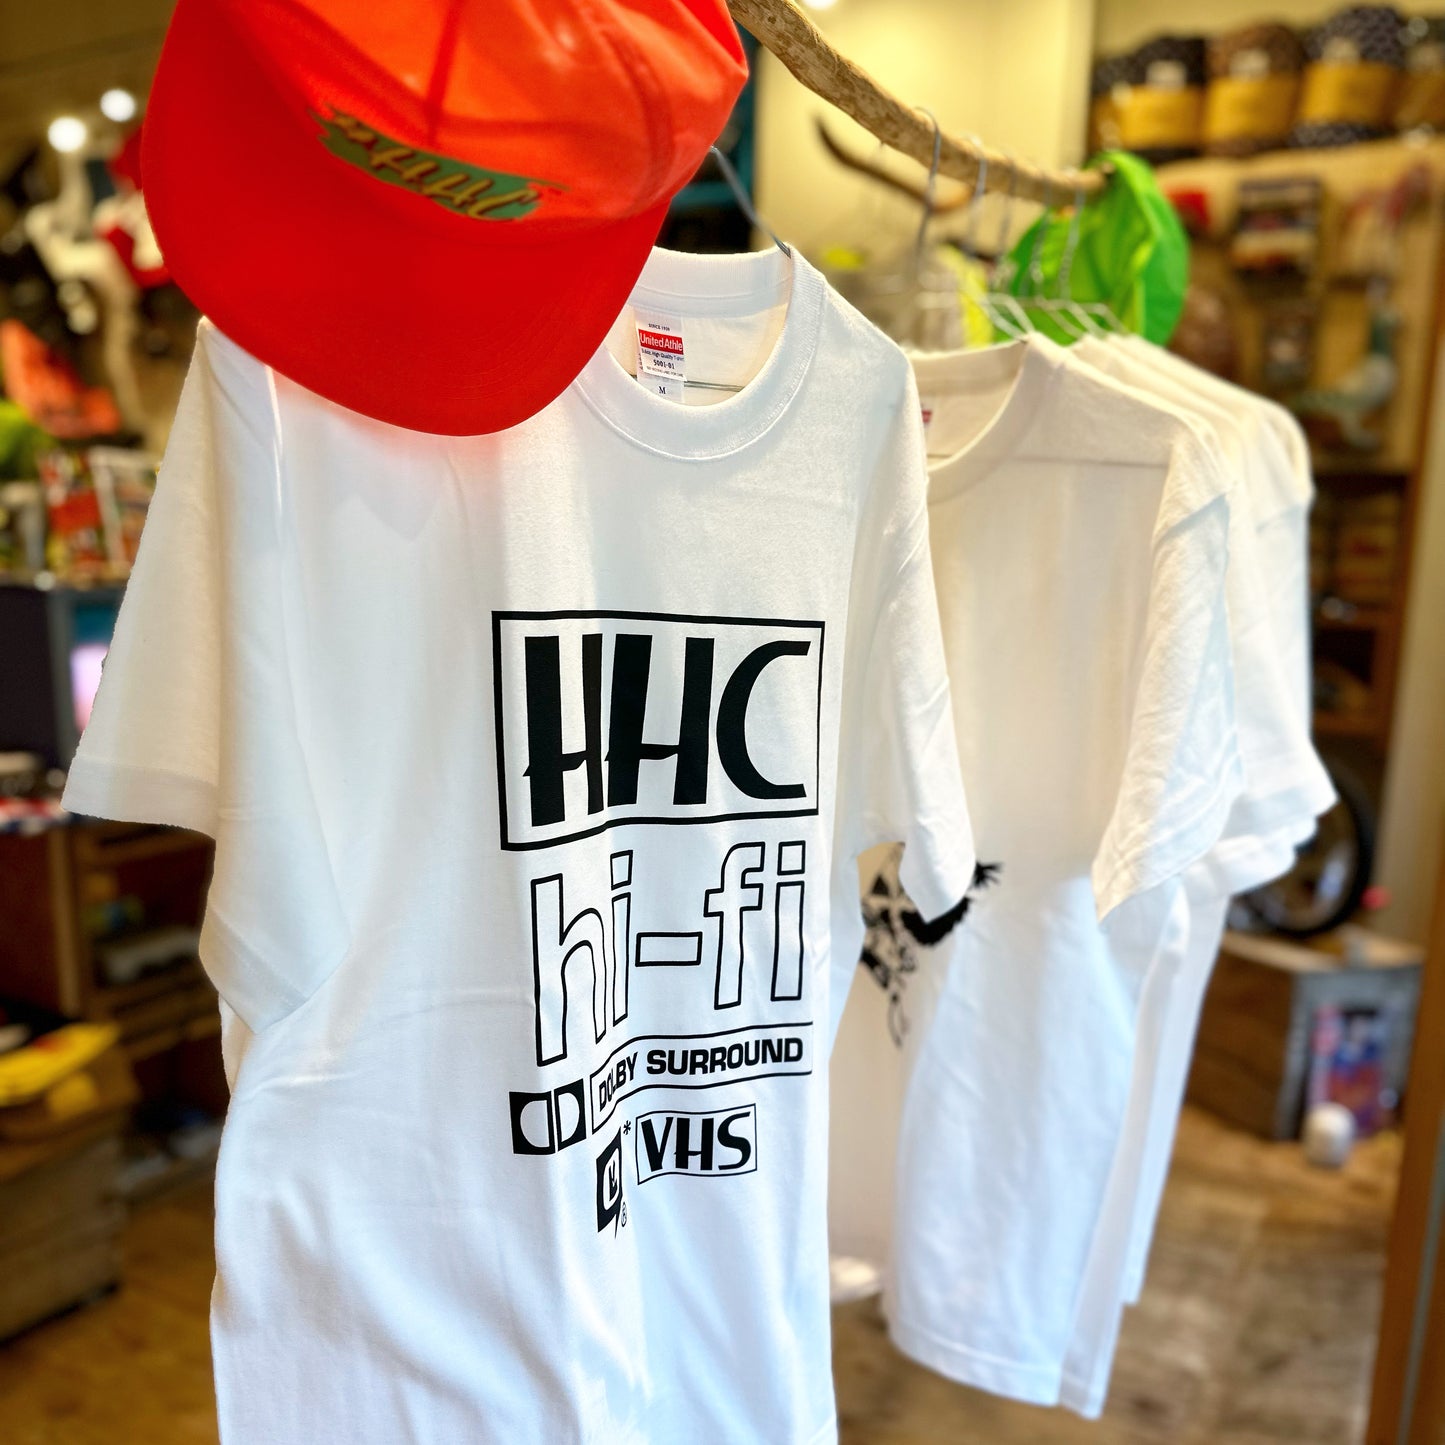 「HHC 髭髭倶楽部」 x 「LIPIT-ISCHTAR」コラボTシャツ higehigeclub リピト hhc